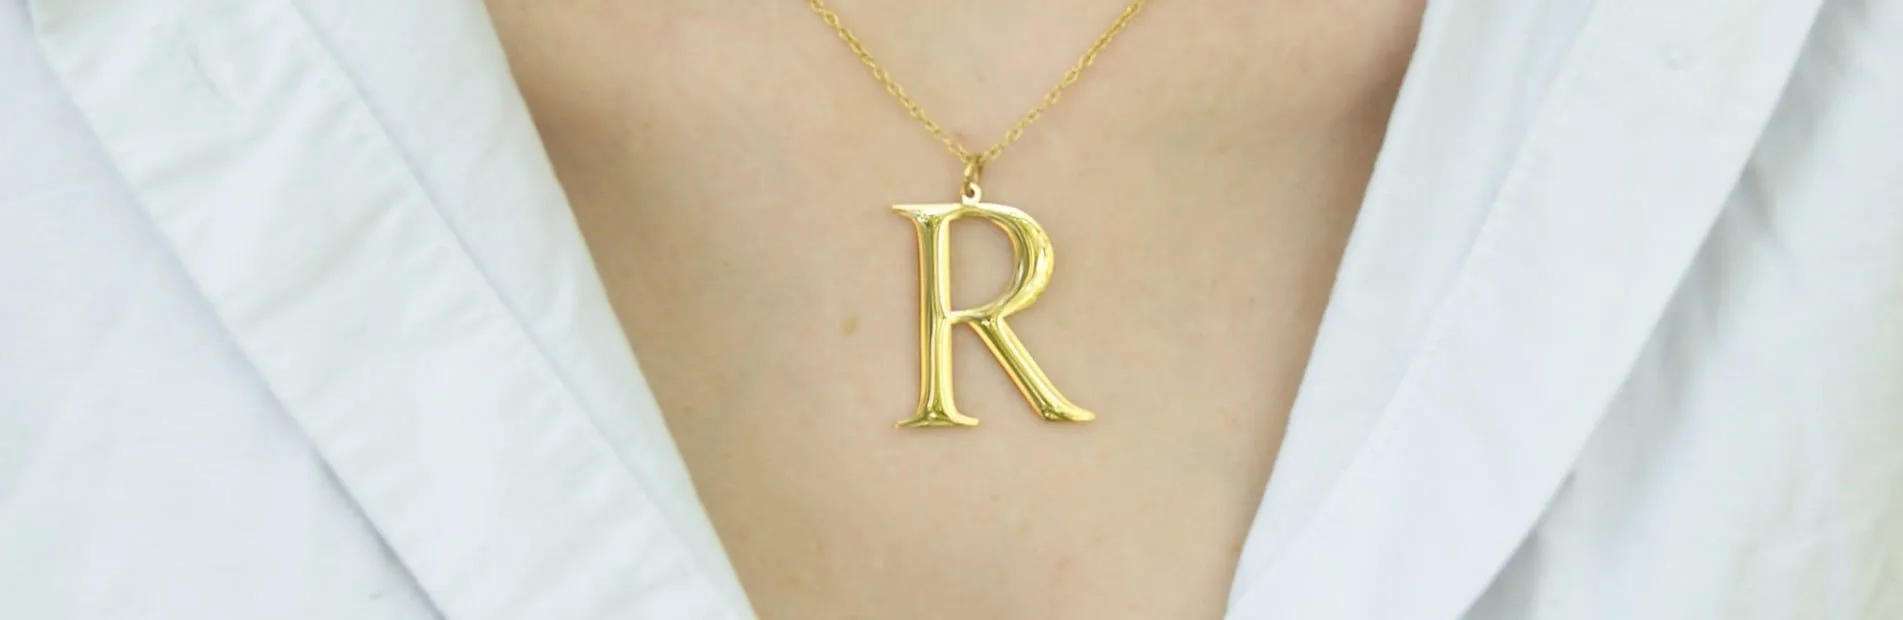 Bannière photo porté du collier Harmony & Majestic avec la lettre R.